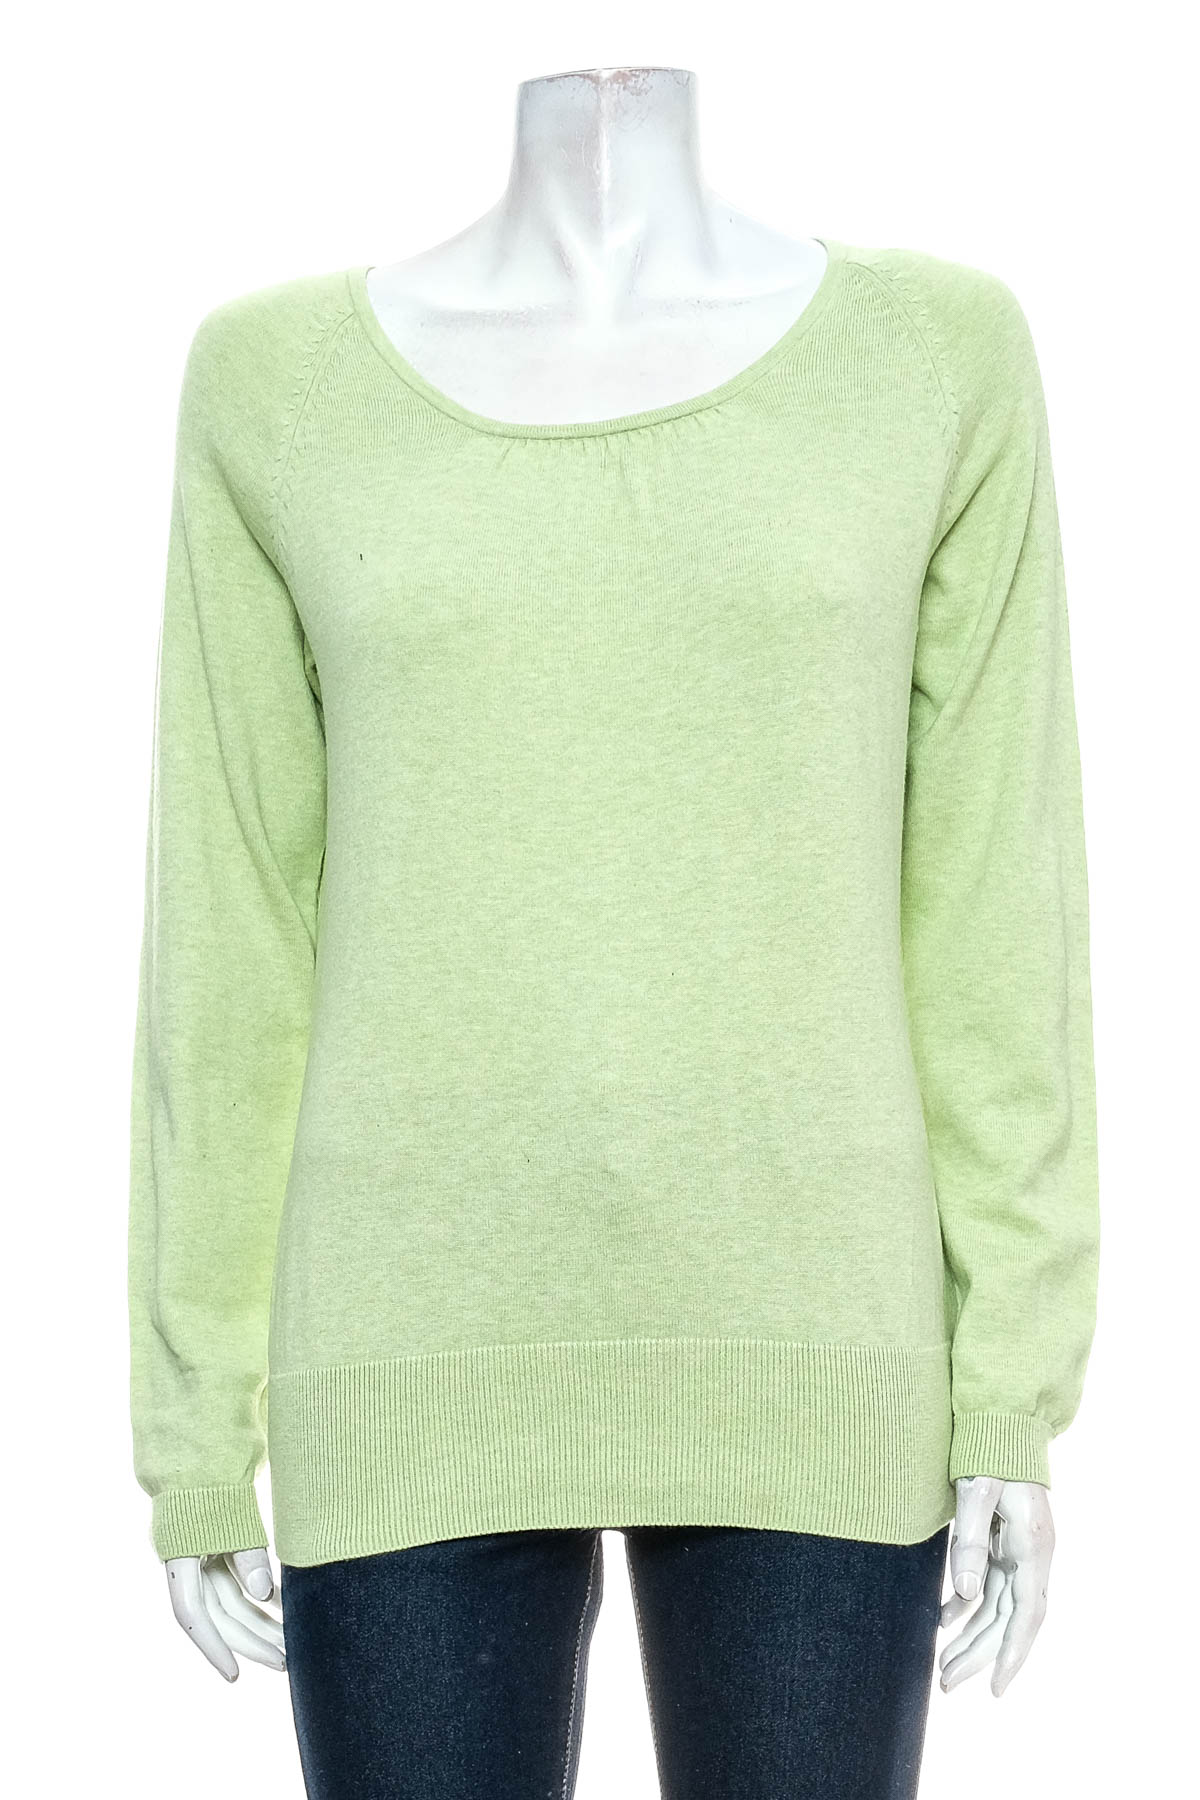 Women's sweater - Marie Lund - 0